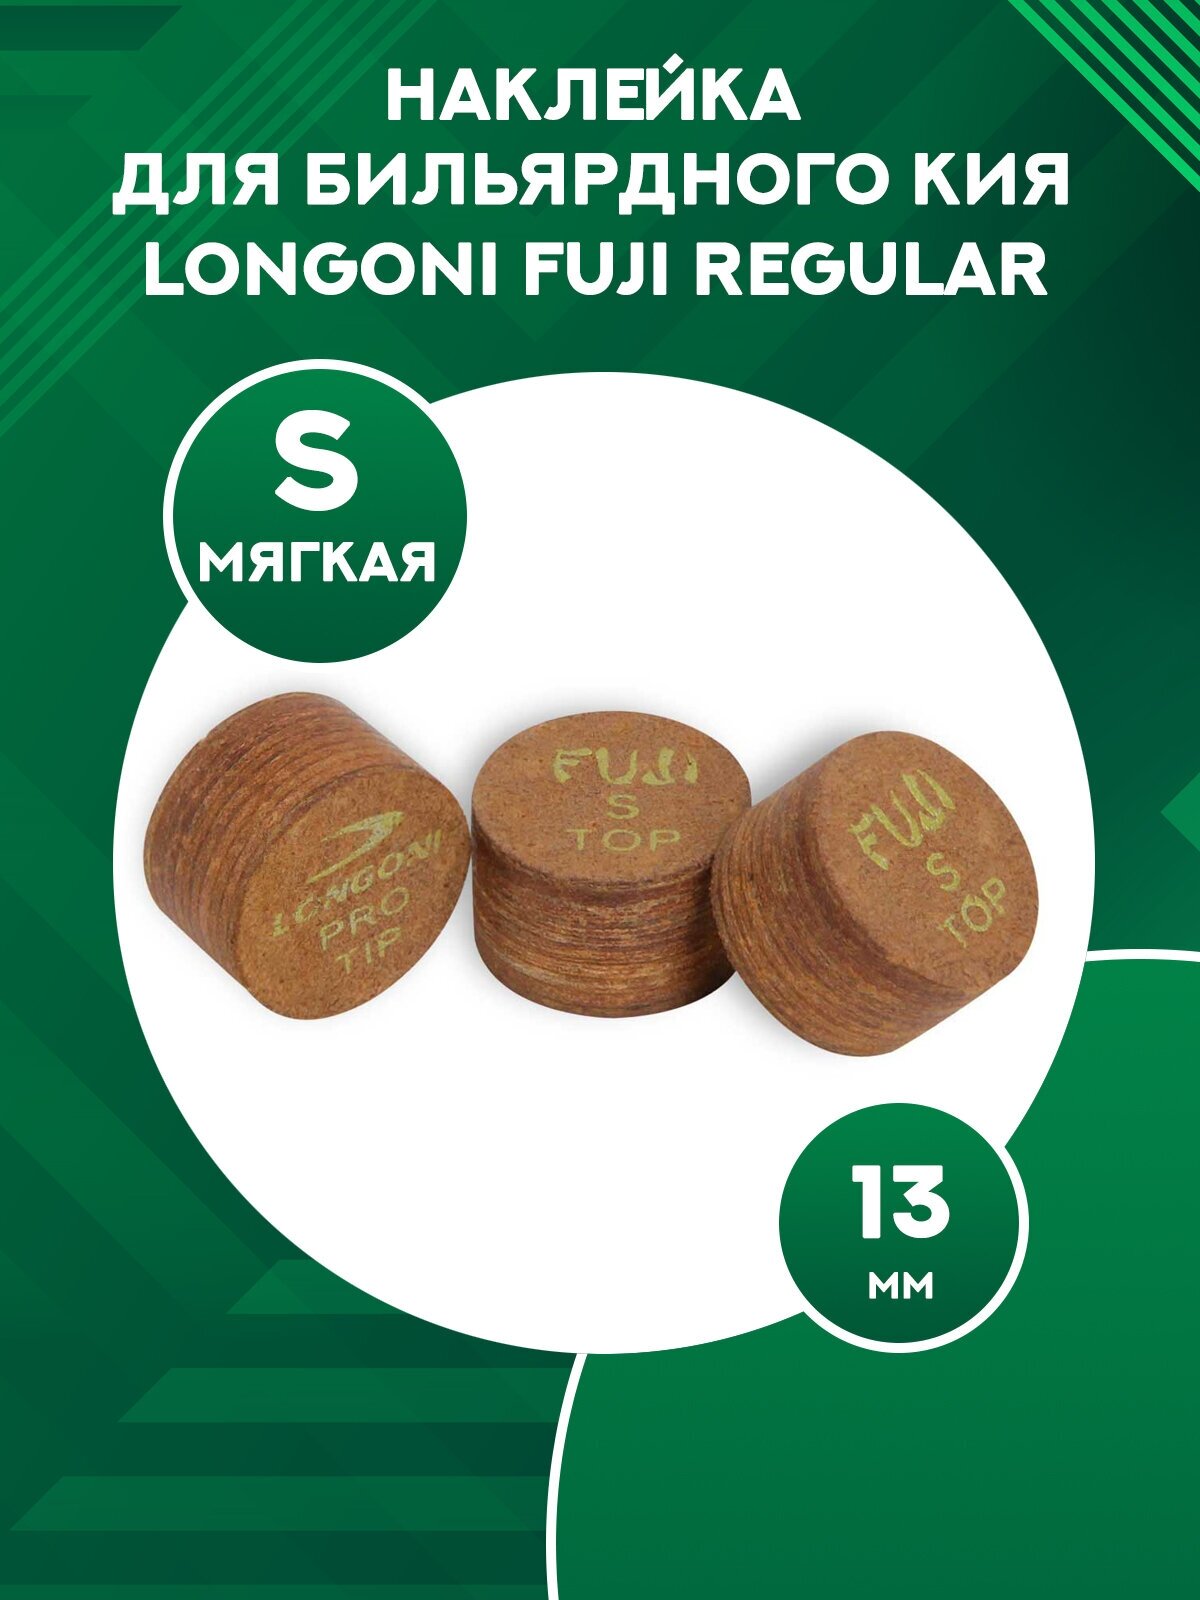 Наклейка для бильярдного кия Longoni Fuji Regular 13 мм Soft 1 шт.